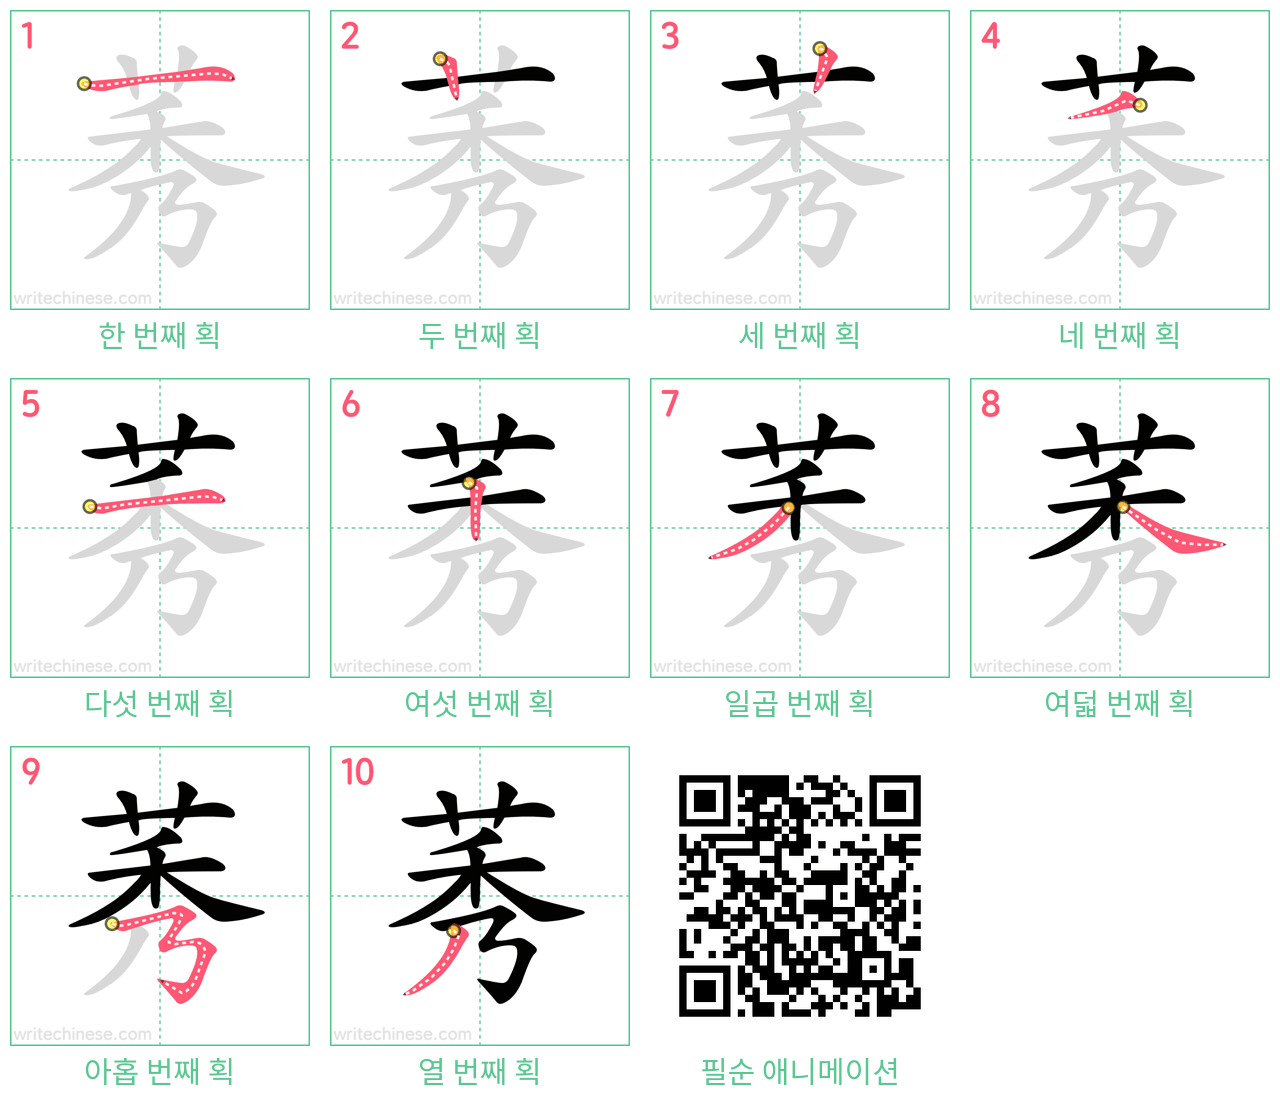 莠 step-by-step stroke order diagrams